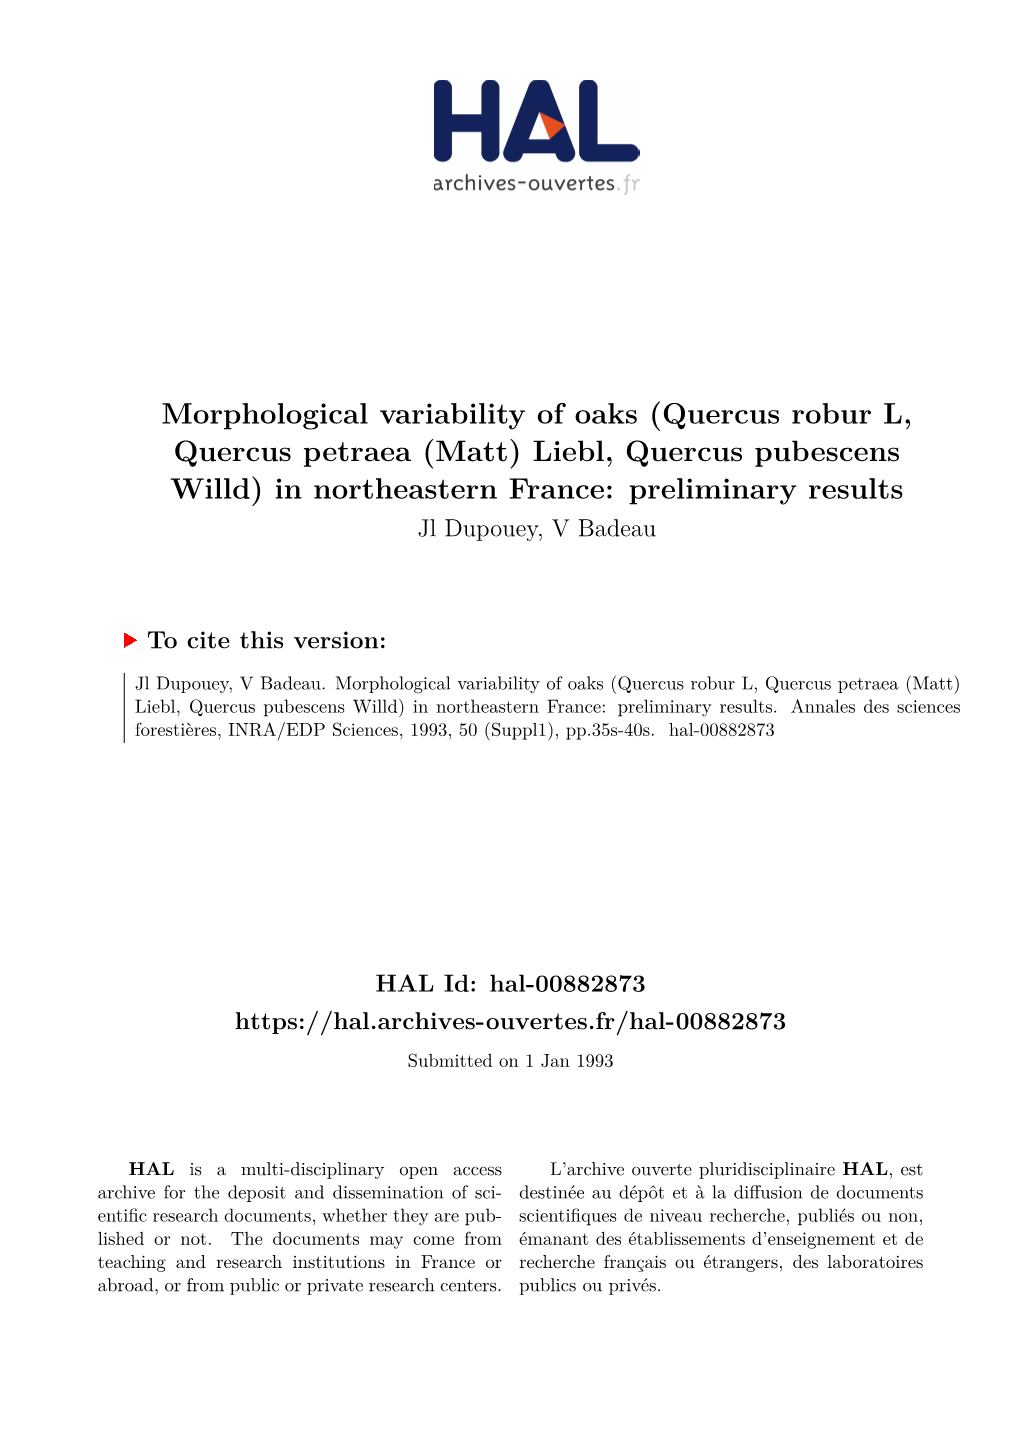 Morphological Variability of Oaks